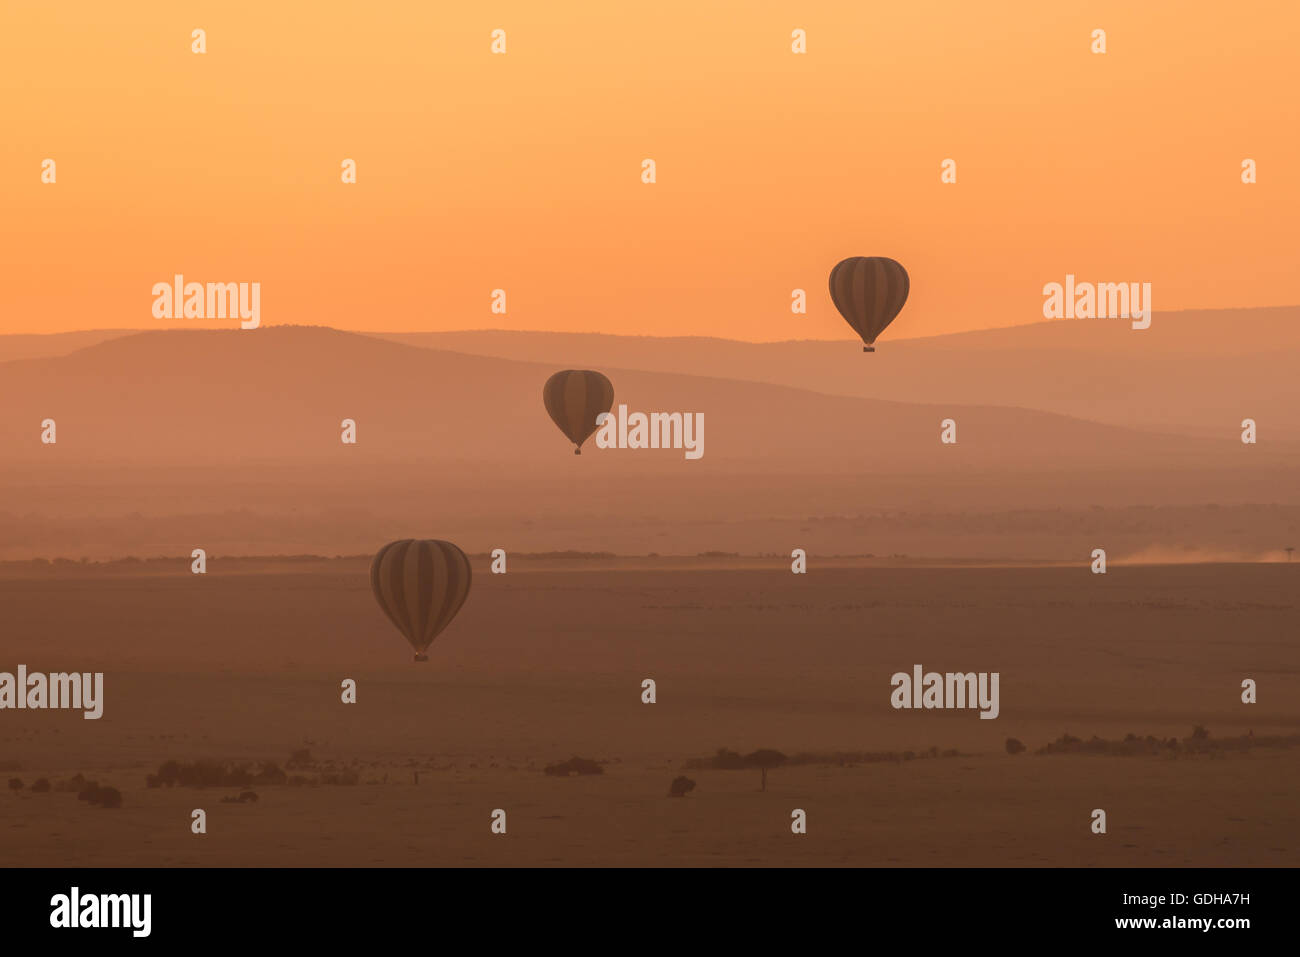 Trois montgolfières survoler les collines basses de la savane africaine. La perspective aérienne rend les collines semblent différentes sha Banque D'Images